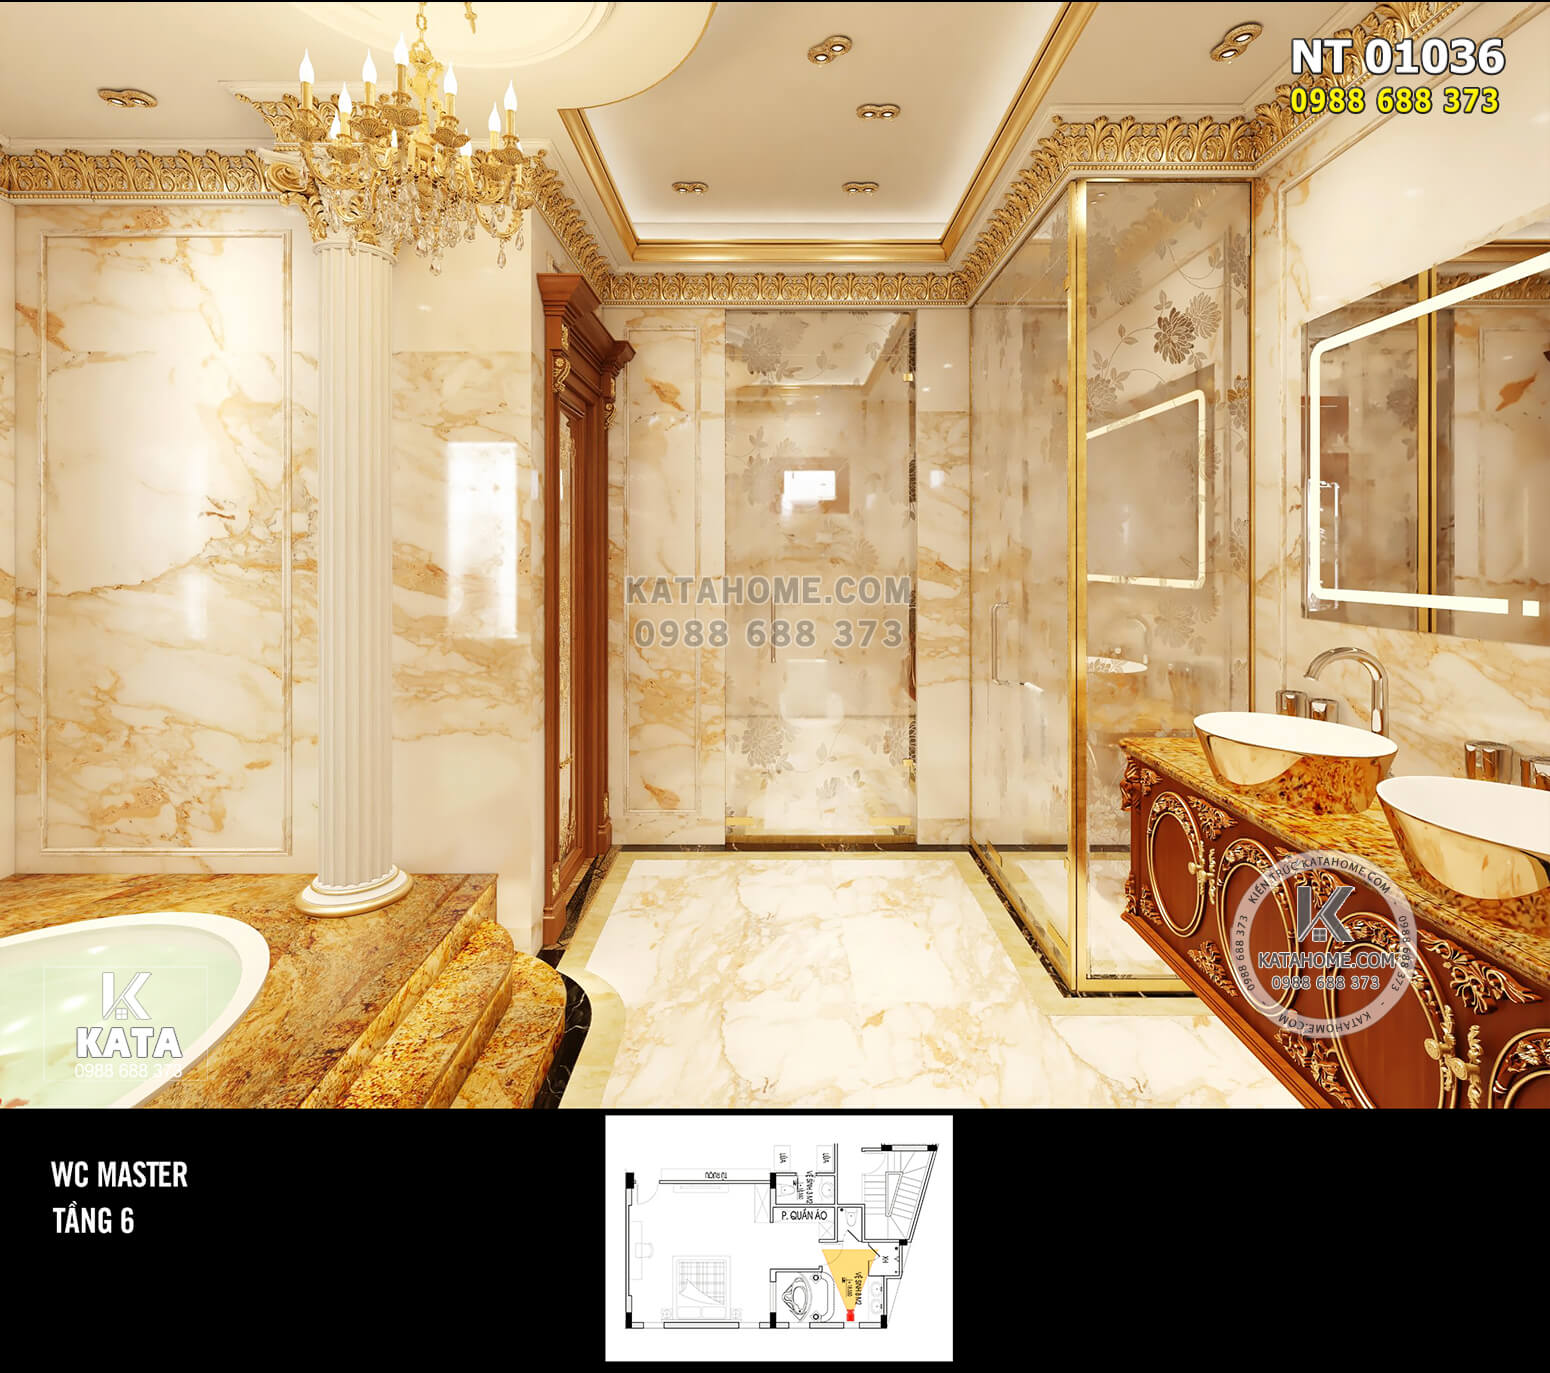 Hình ảnh: Sự tiện nghi cùa phòng tắm trong mẫu phòng ngủ tân cổ điển hoàng gia - NT 01036